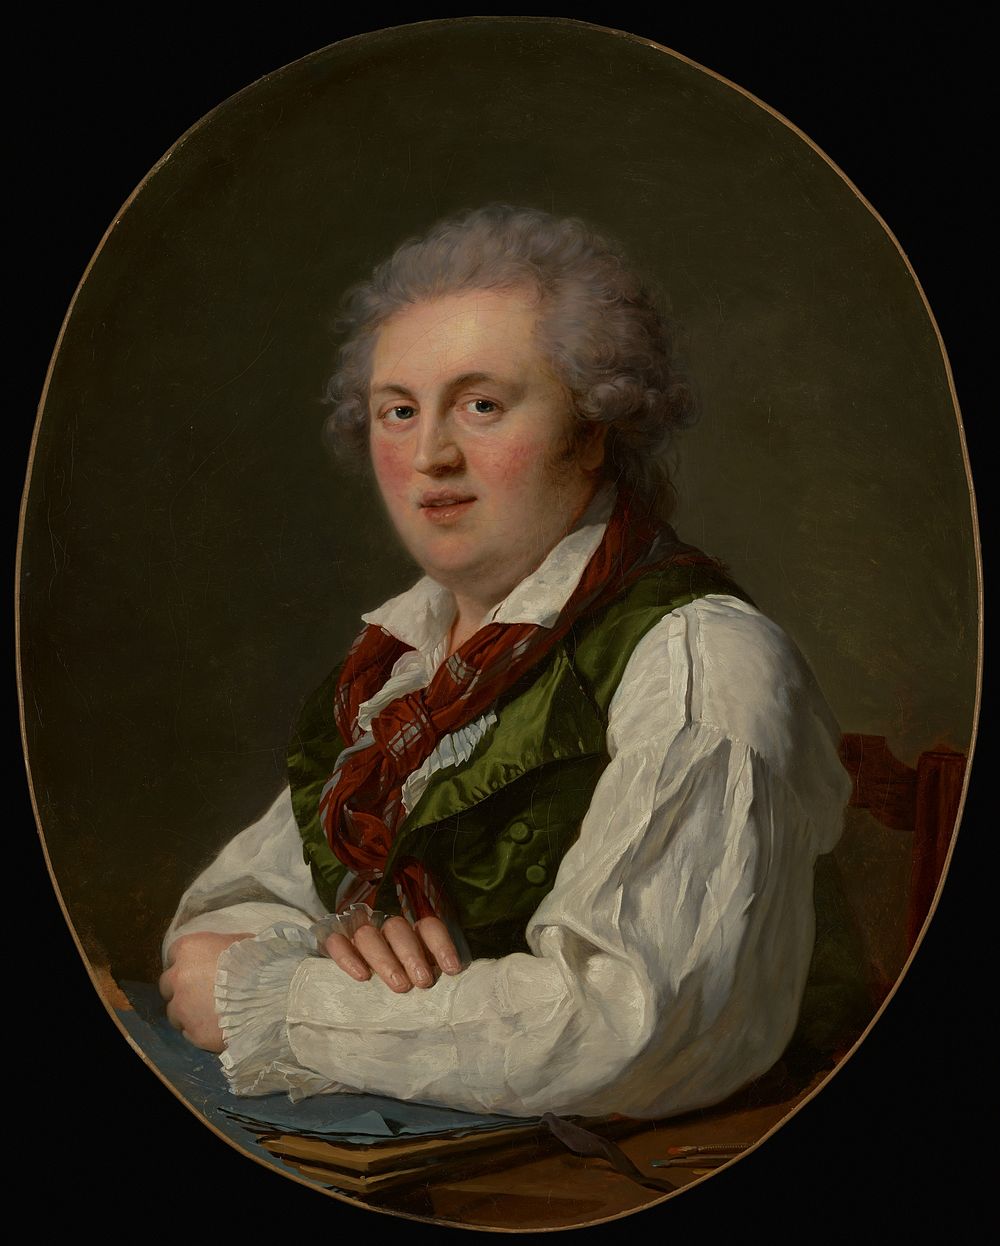 Portrait of Laurent-Nicolas de Joubert by François Xavier Fabre